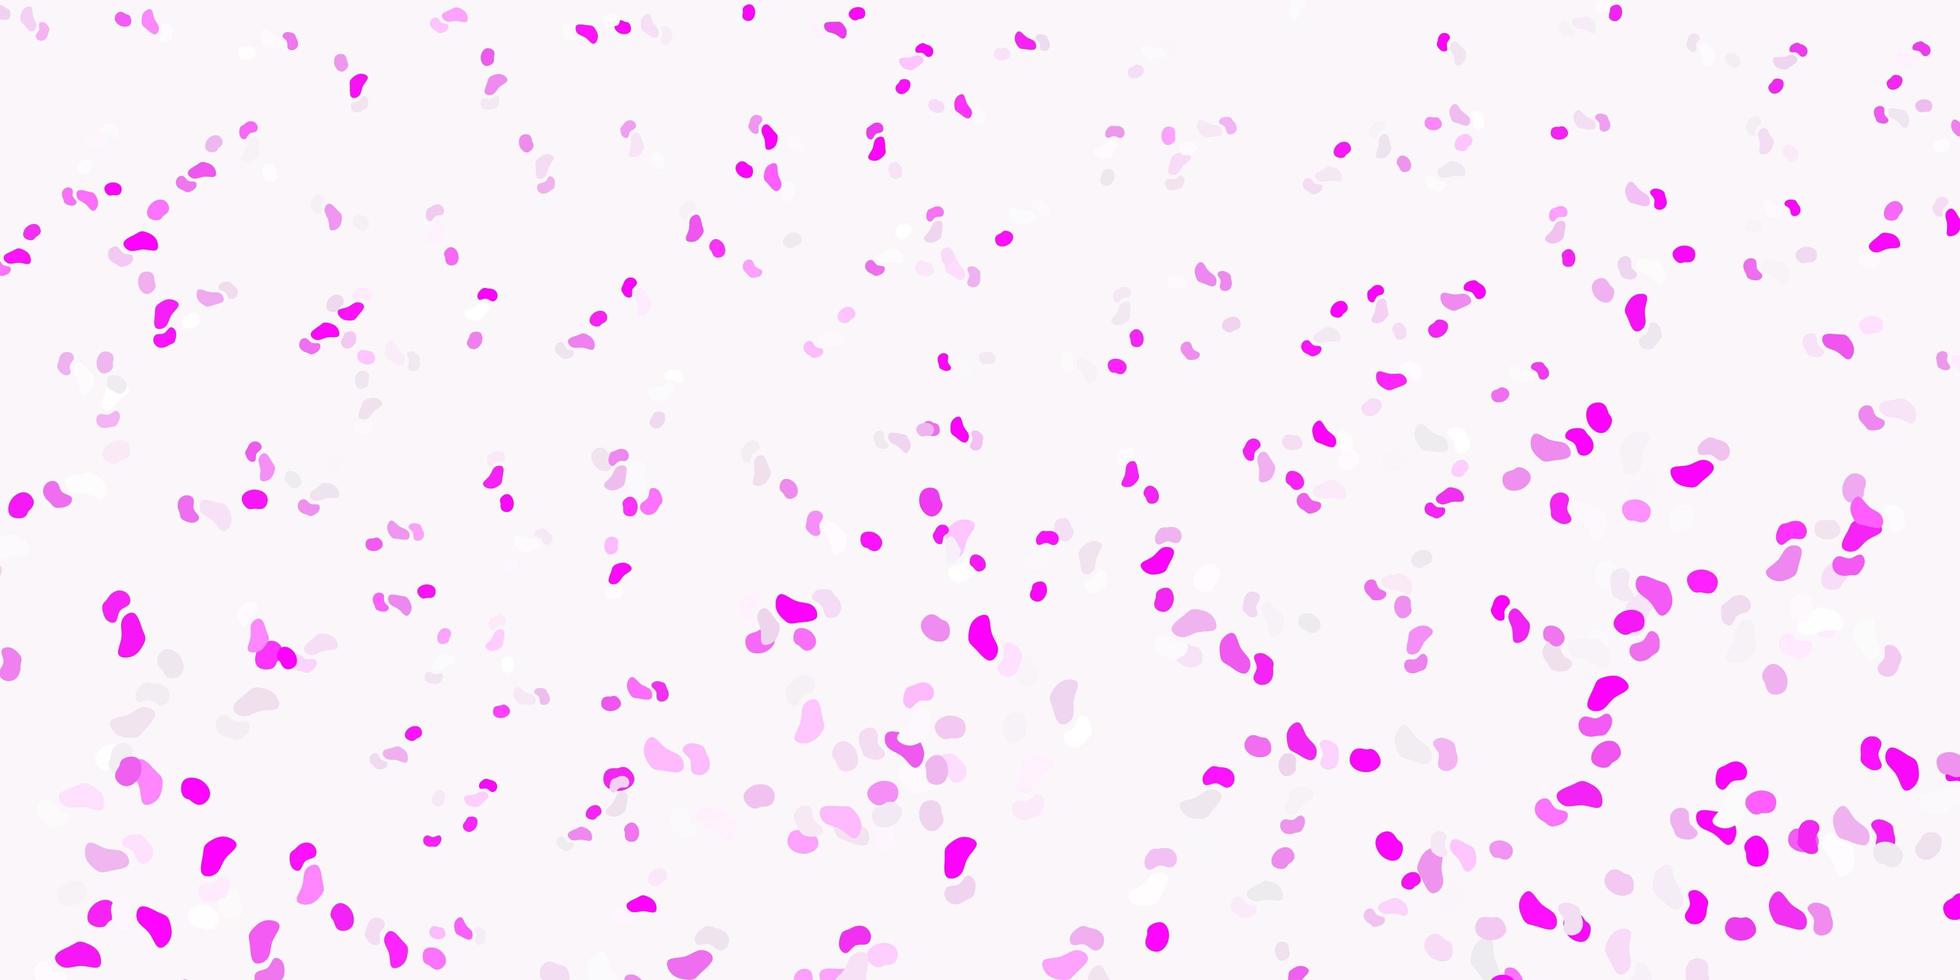 plantilla de vector de color púrpura claro, rosa con formas abstractas.